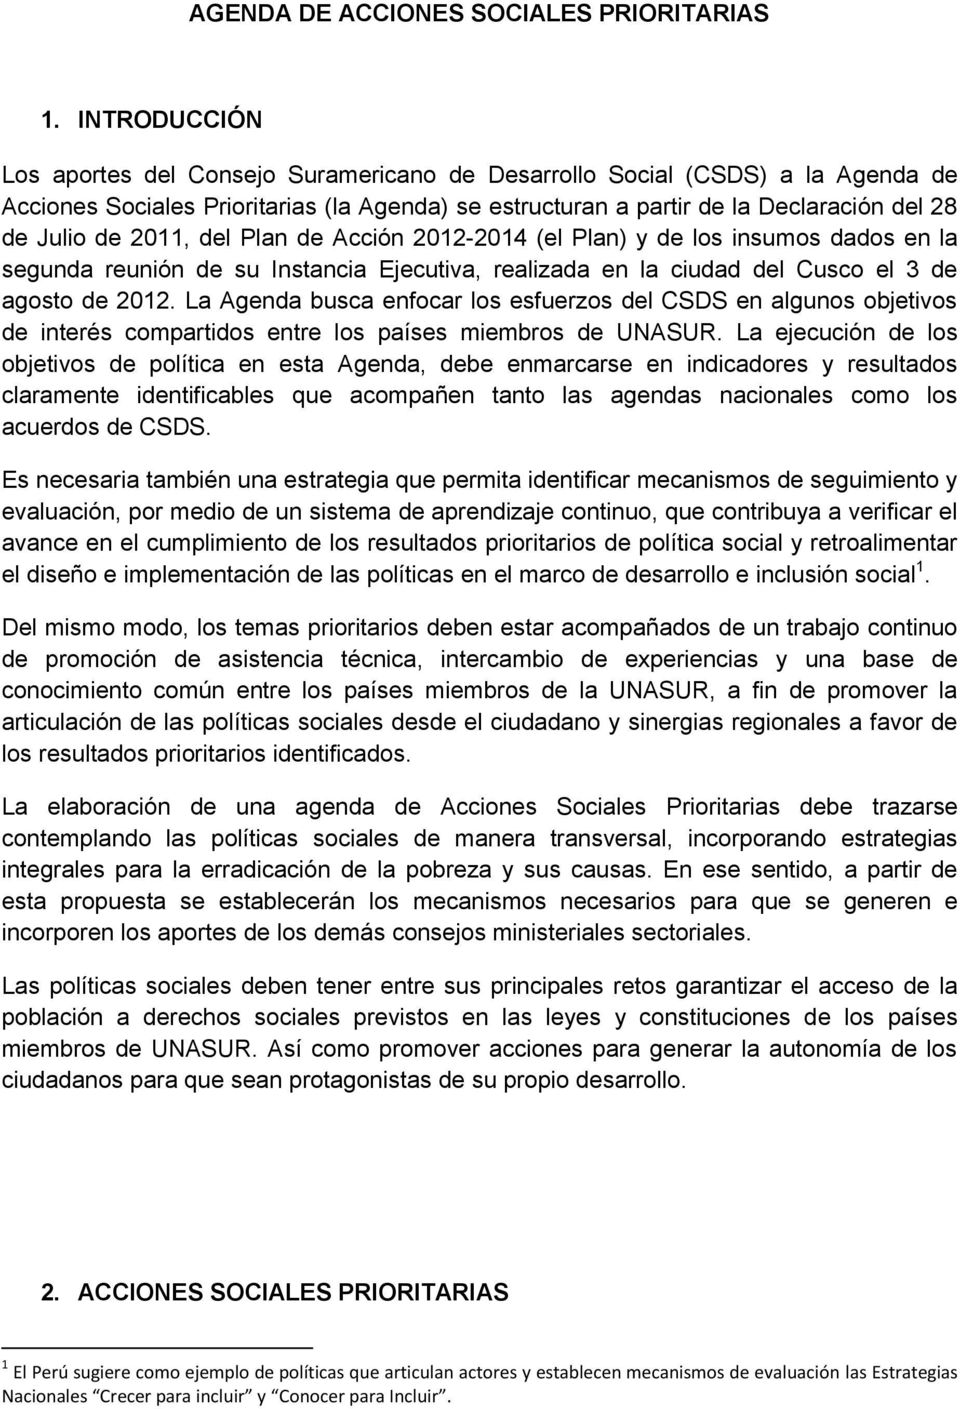 2011, del Plan de Acción 2012-2014 (el Plan) y de los insumos dados en la segunda reunión de su Instancia Ejecutiva, realizada en la ciudad del Cusco el 3 de agosto de 2012.